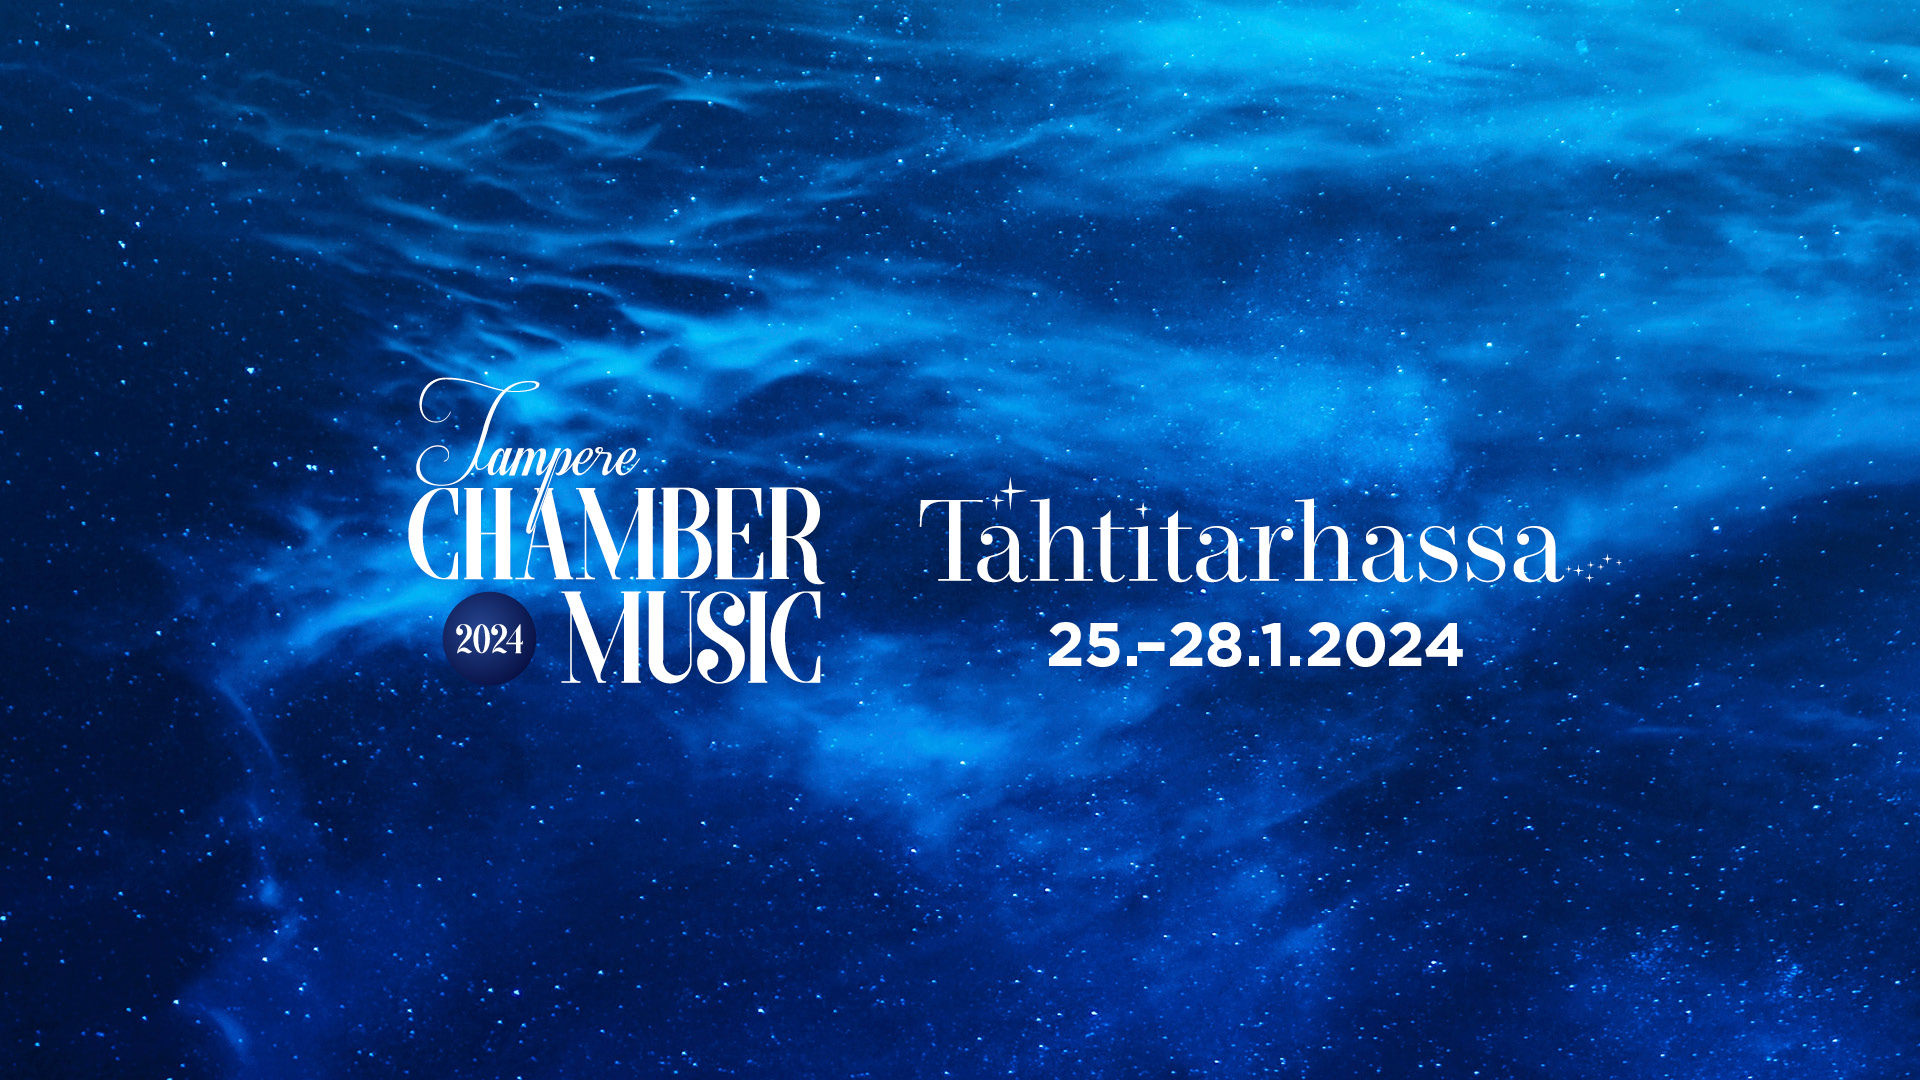 Taustana syvän sininen tähtitaivas. Teksti: Tampere Chamber Music 2024. Tähtitarhassa 25.–28.1.2024